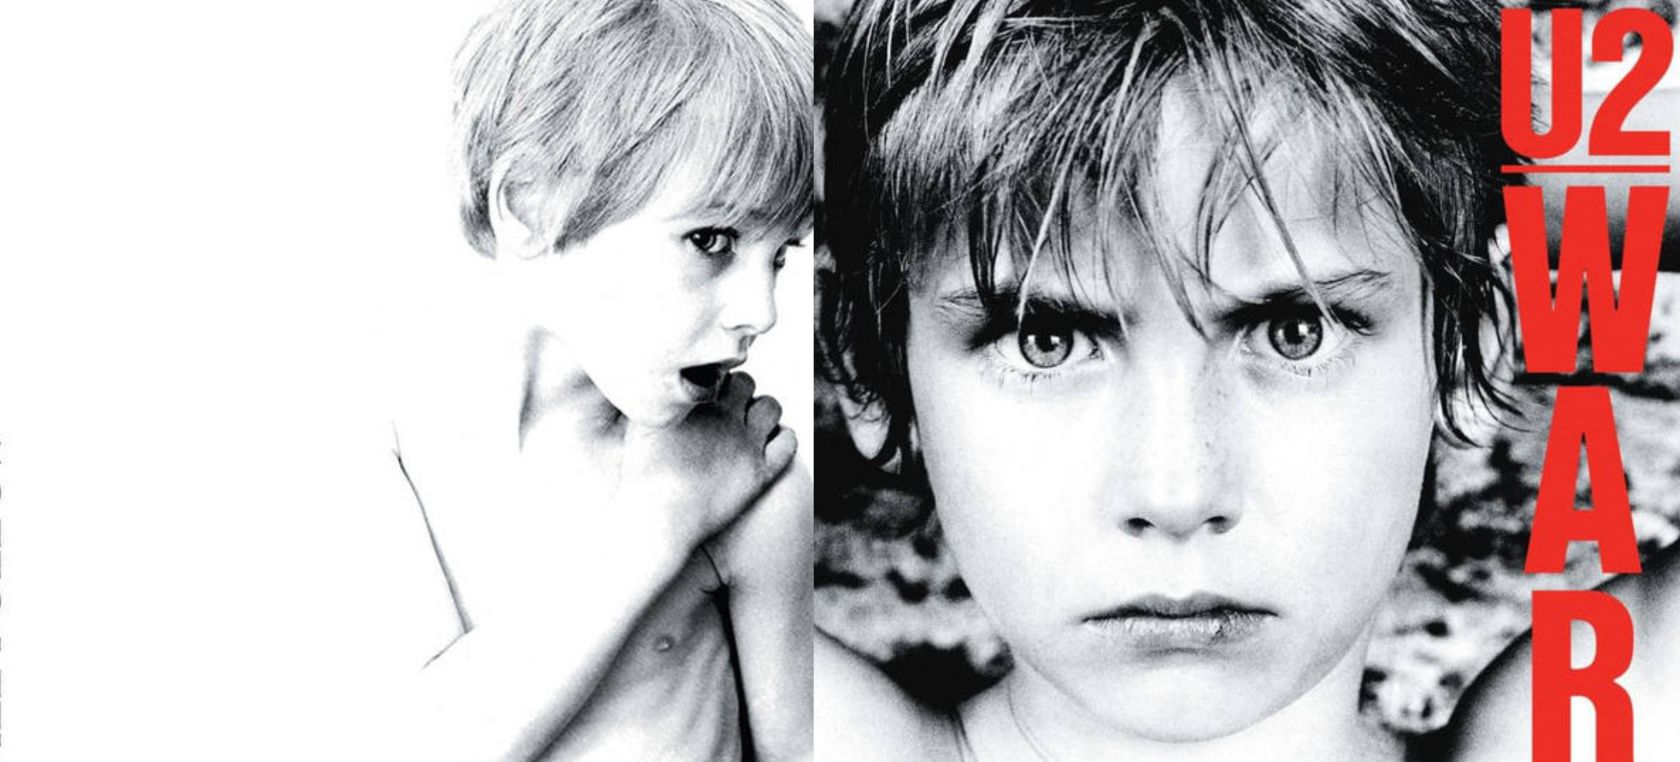 Así ha cambiado el niño de la portada de los primeros álbumes de U2 | LOS40  Classic | LOS40